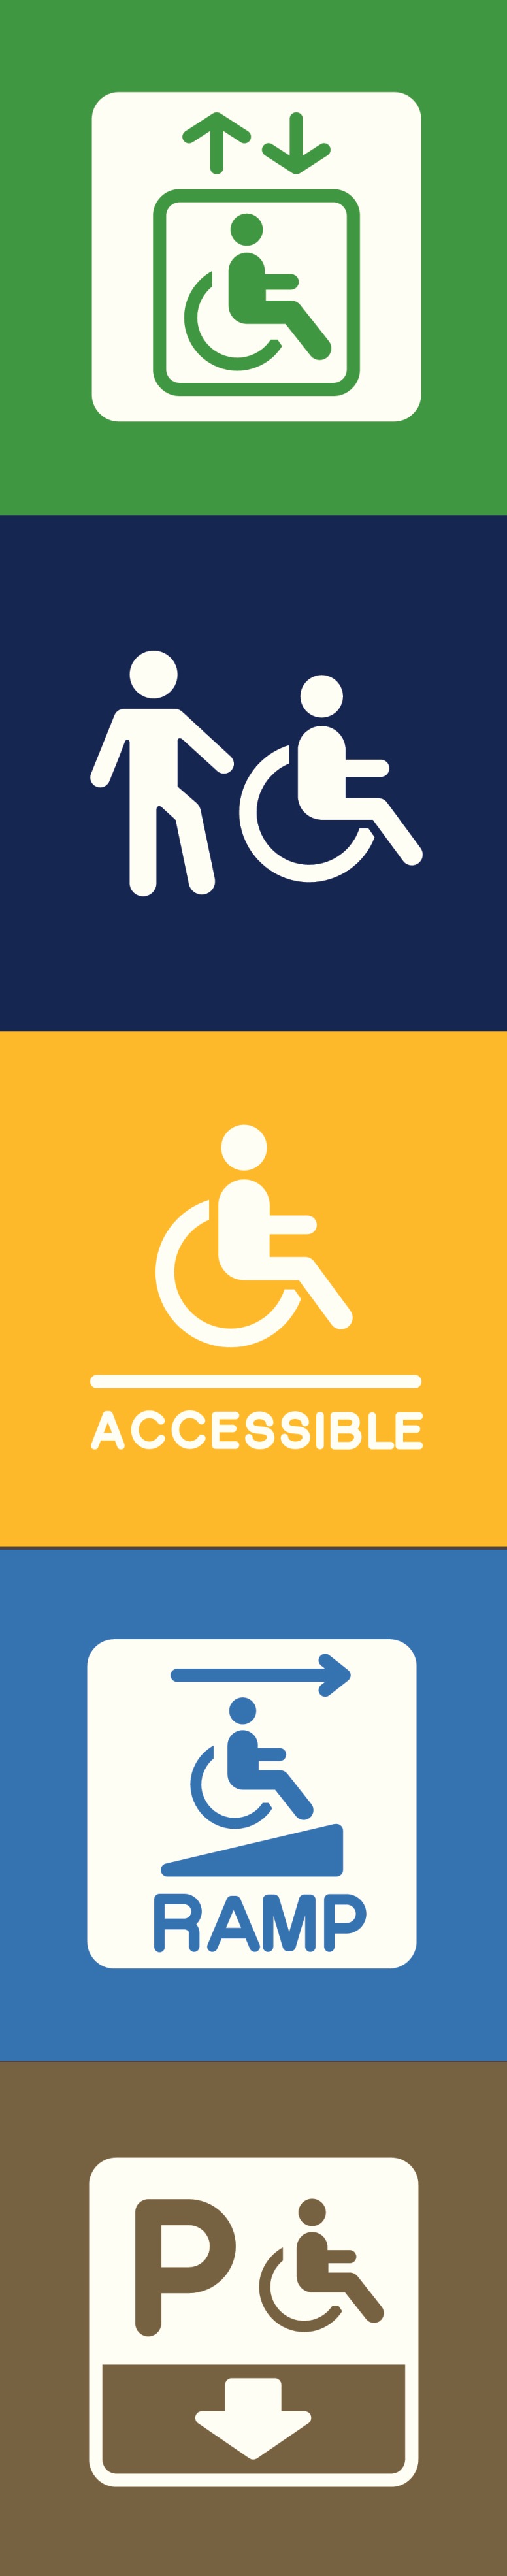 trilhas acessibilidade cadeirante icons